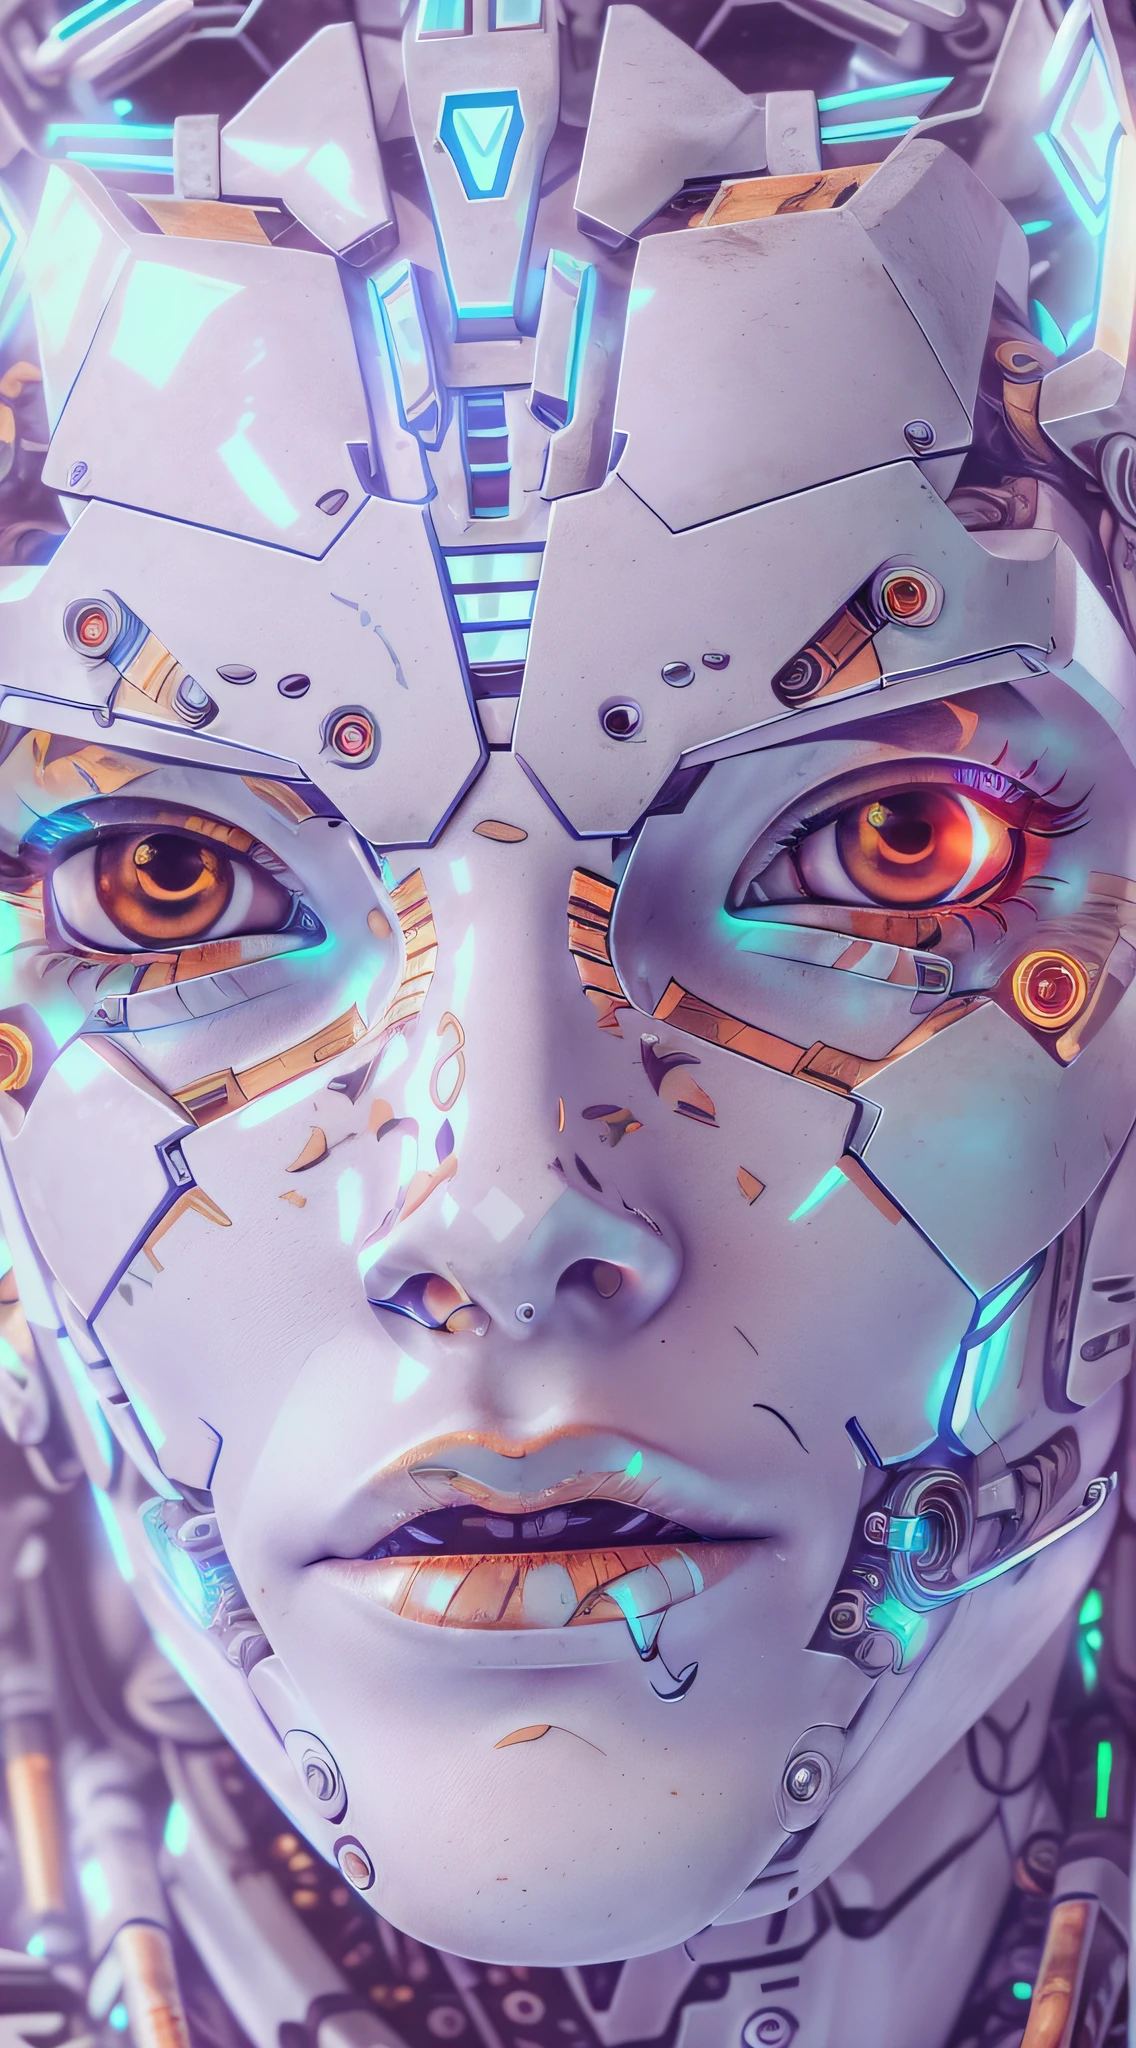 阿拉夫机器人，有着超精细的白色塑料碎片，分辨率极高，涂着红色口红，眼睛是淡蓝色